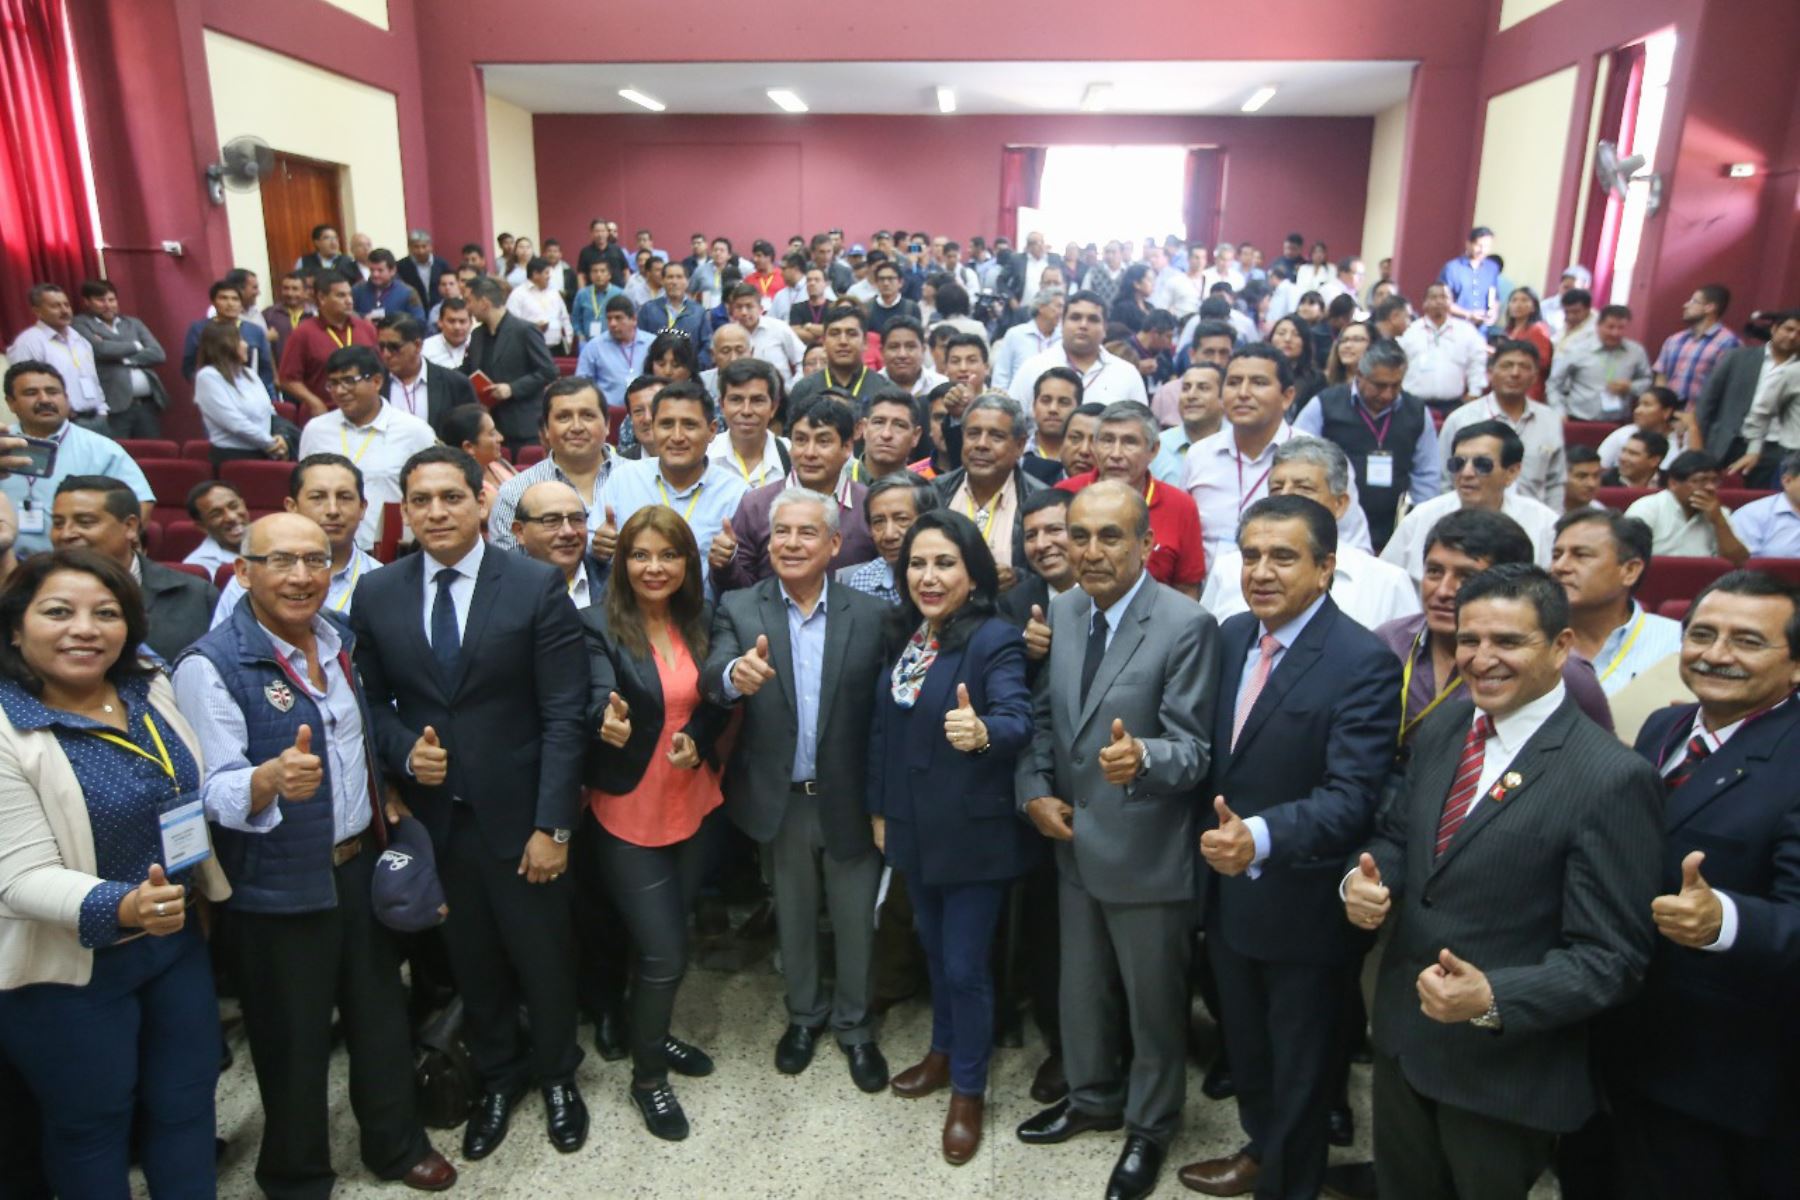 La ministra Liliana La Rosa se reunió hace unos días con 125 alcaldes electos de los distritos más necesitados del Perú, como parte de la transferencia de gestión a las nuevas autoridades regionales y locales para el periodo 2019-2022.